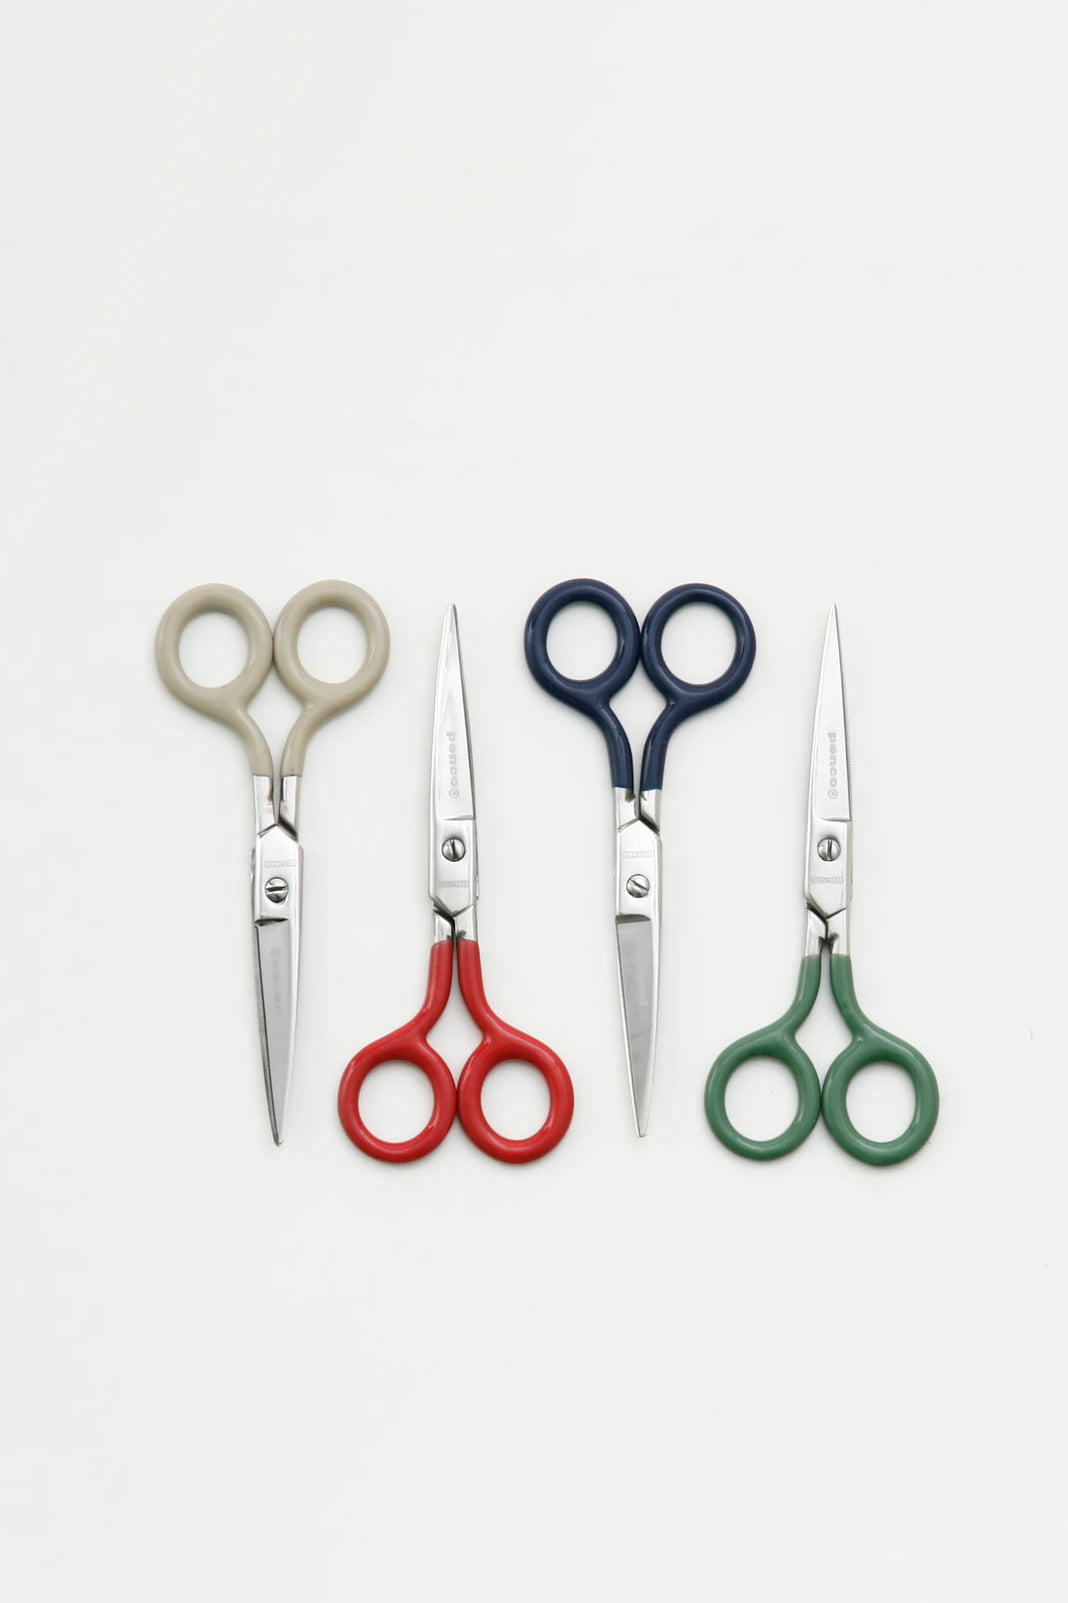 Stainless scissors green-penco-[interior]-[design]-KIOSK48TH